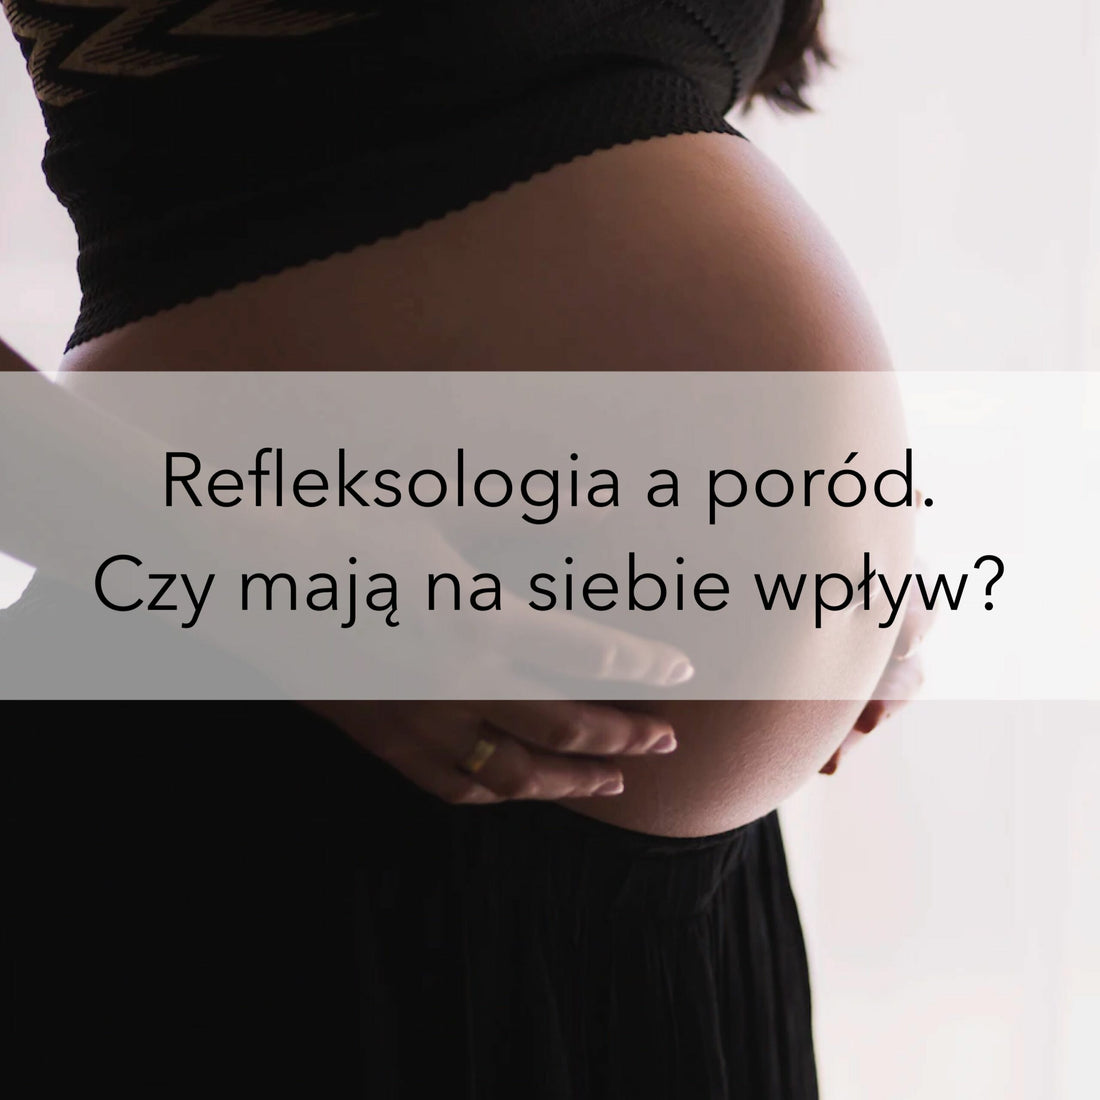 Refleksologia a poród. Czy mają na siebie wpływ?